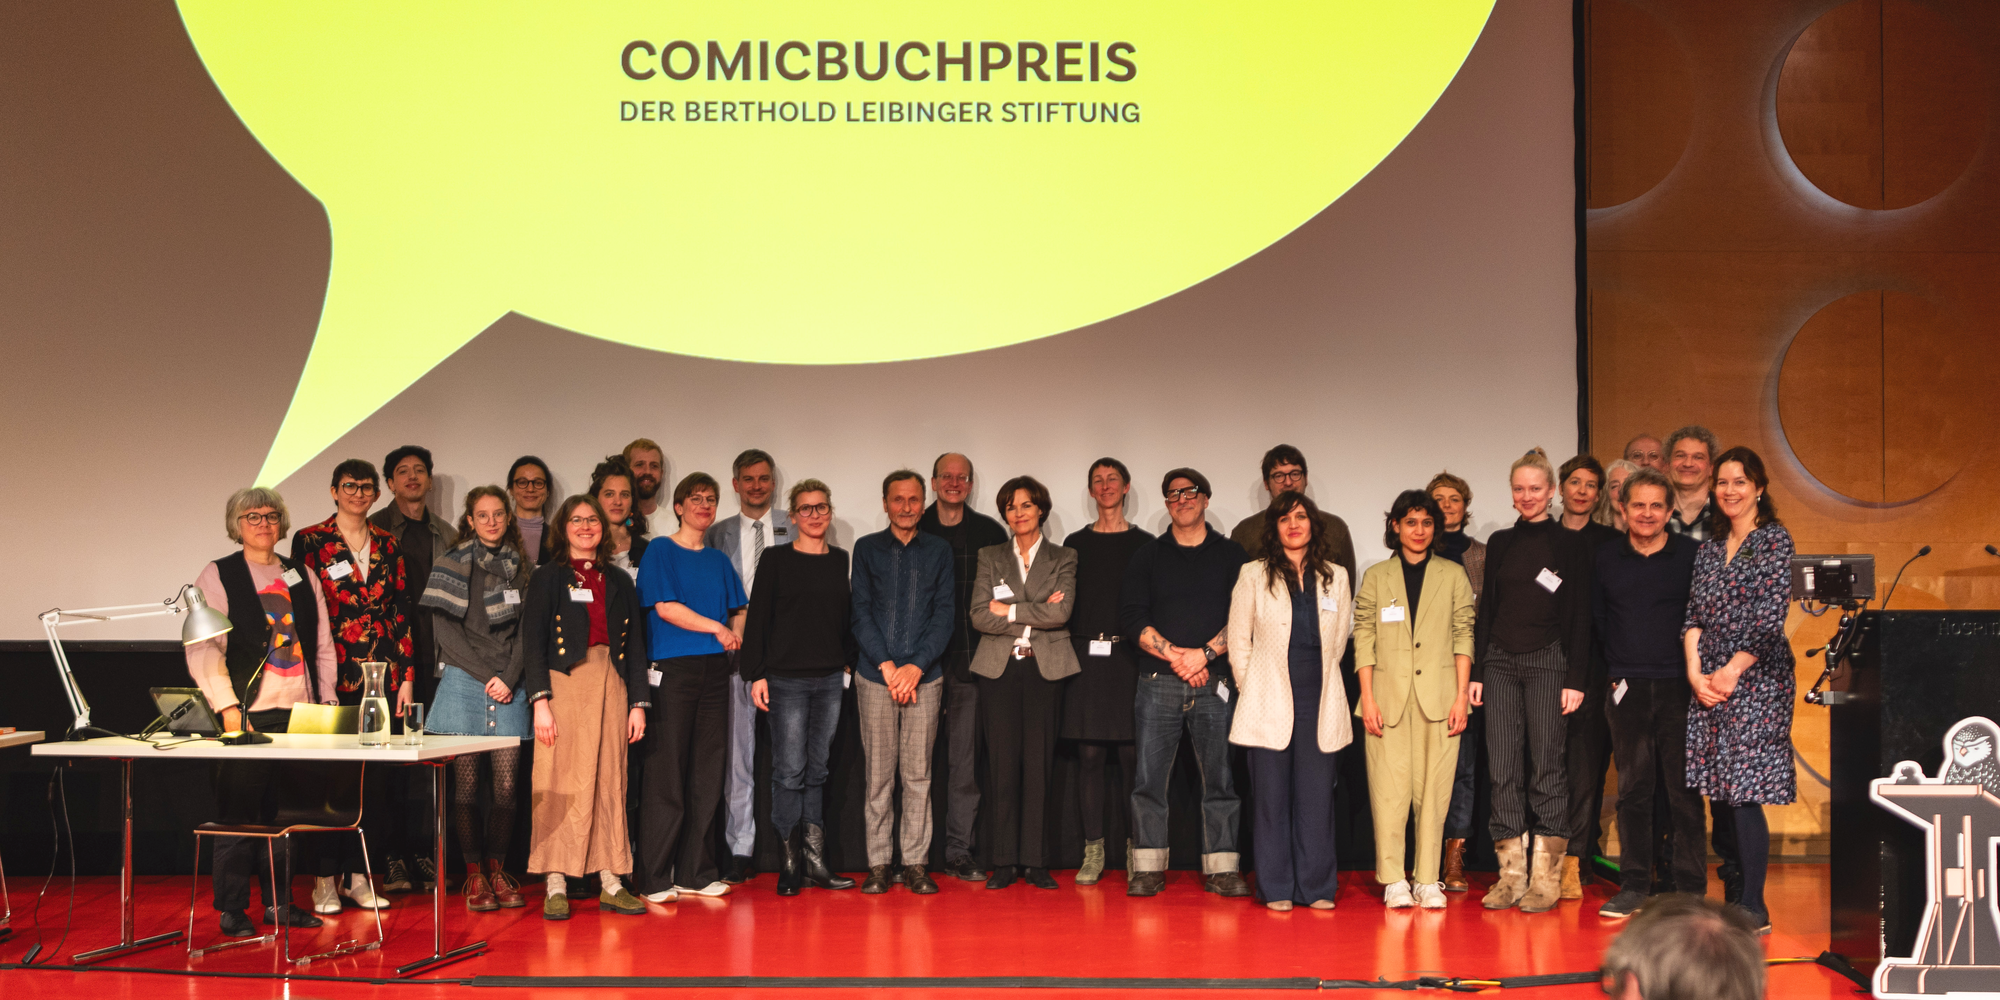 Franz Suess gewinnt den Comicbuchpreis der Berthold Leibinger Stiftung!